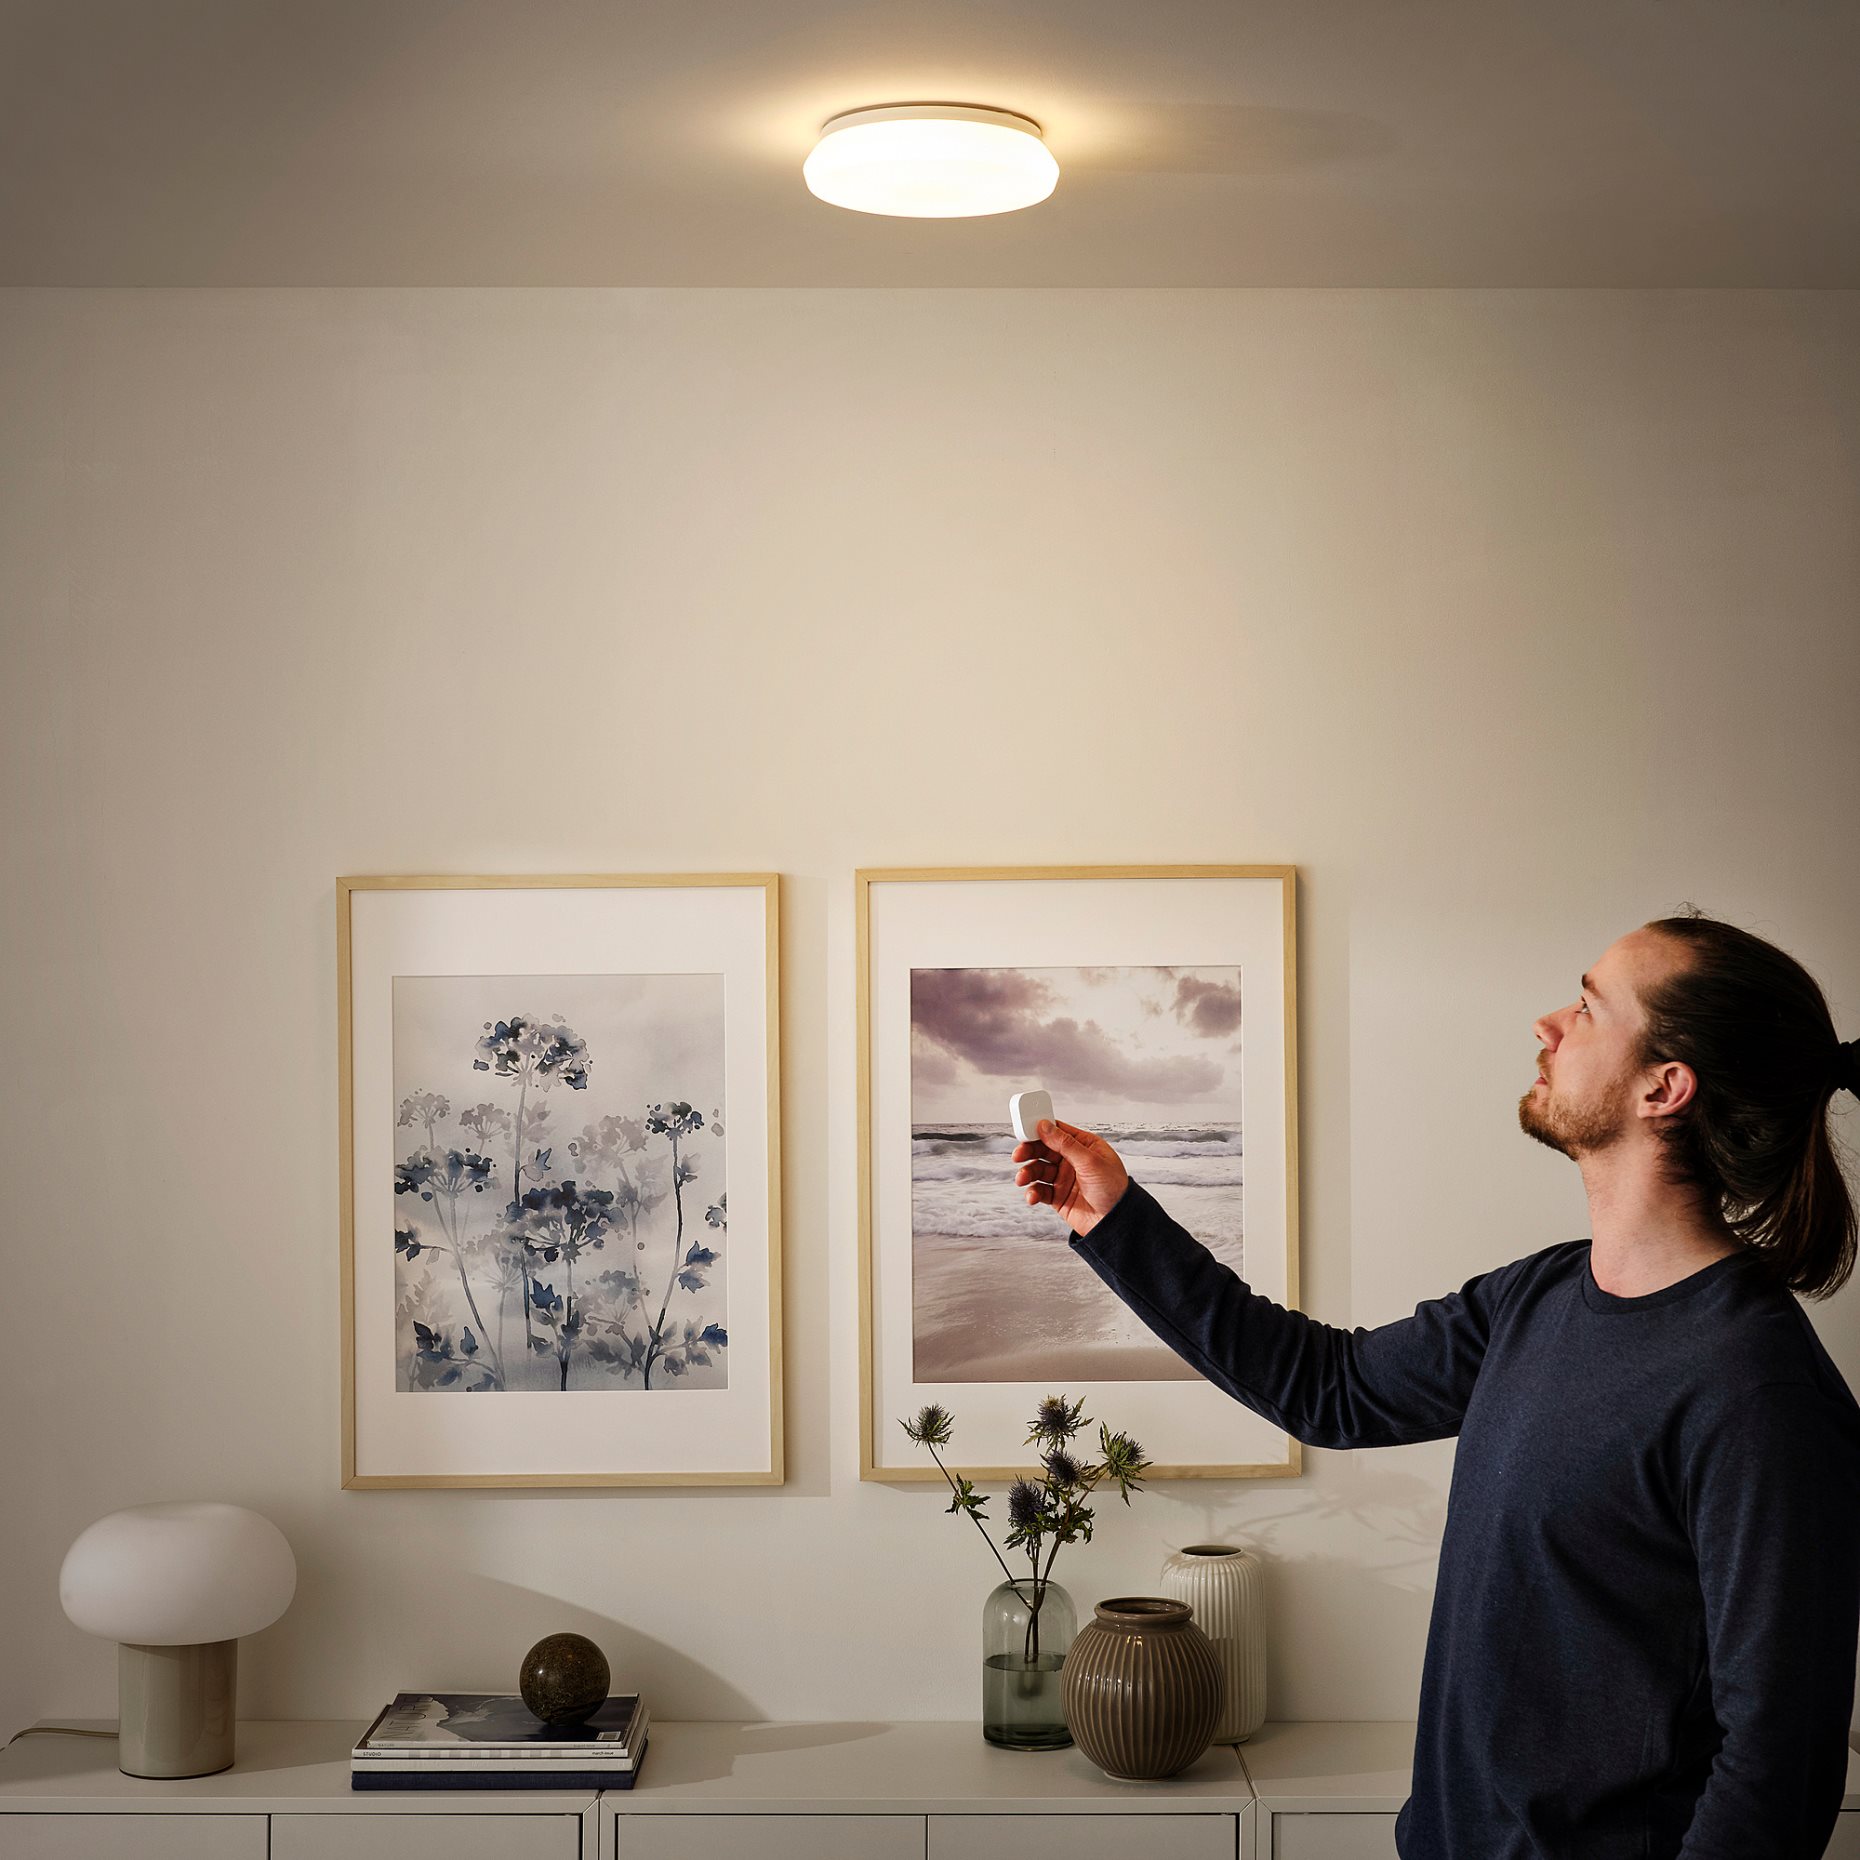 STOFTMOLN, LED лампа за таван/стена, безжично регул. на светлината, 24 см, 304.974.90